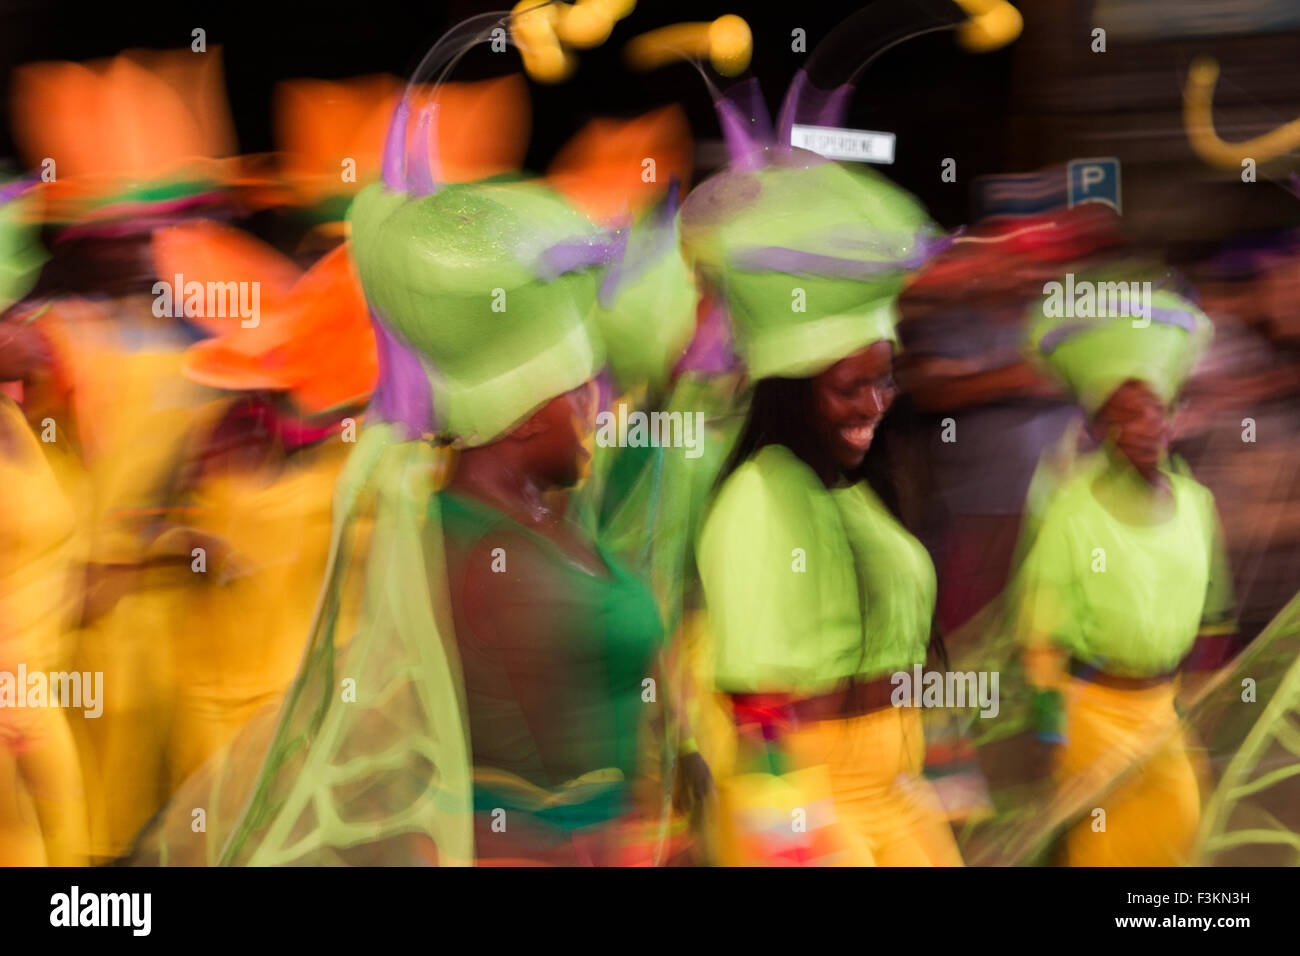 Bewegungsunschärfe und Farbe der Tänzer in Bewegung am Kap Karneval, Fanfare Straße in GreenPoint, Kapstadt, Südafrika Stockfoto